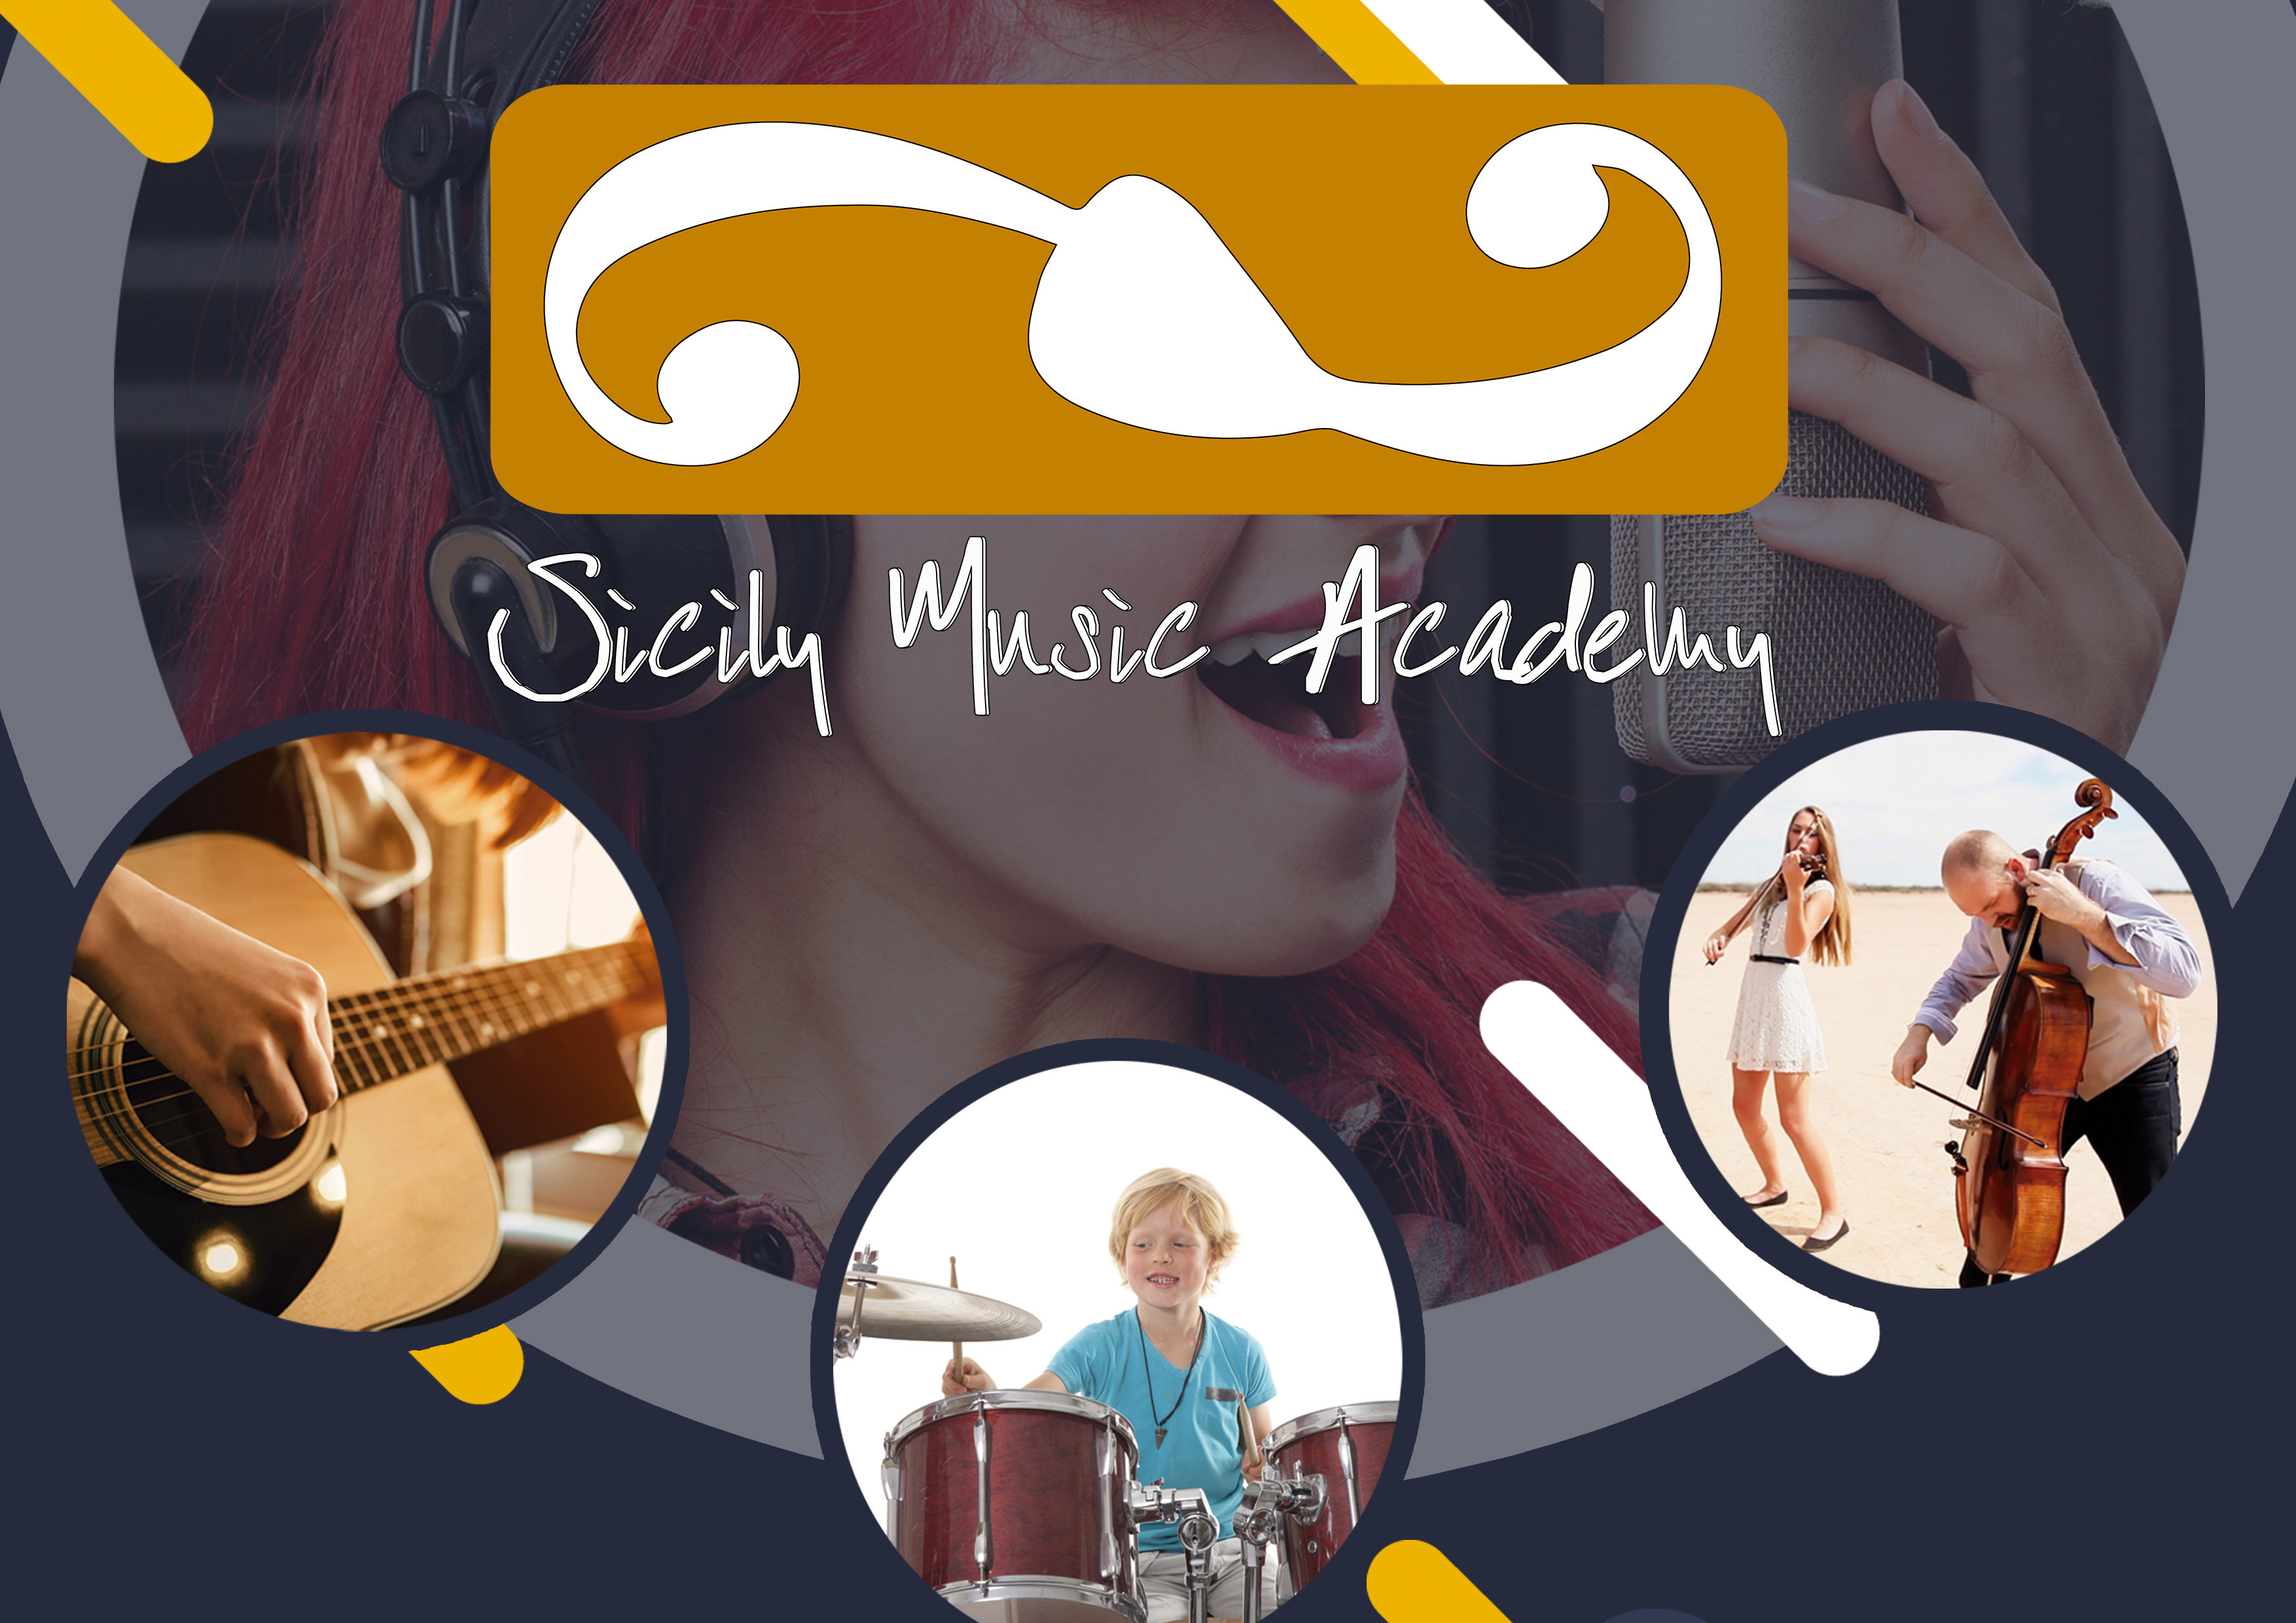 Sicily Music Academy, aperte le iscrizioni per l’anno 2020/2021